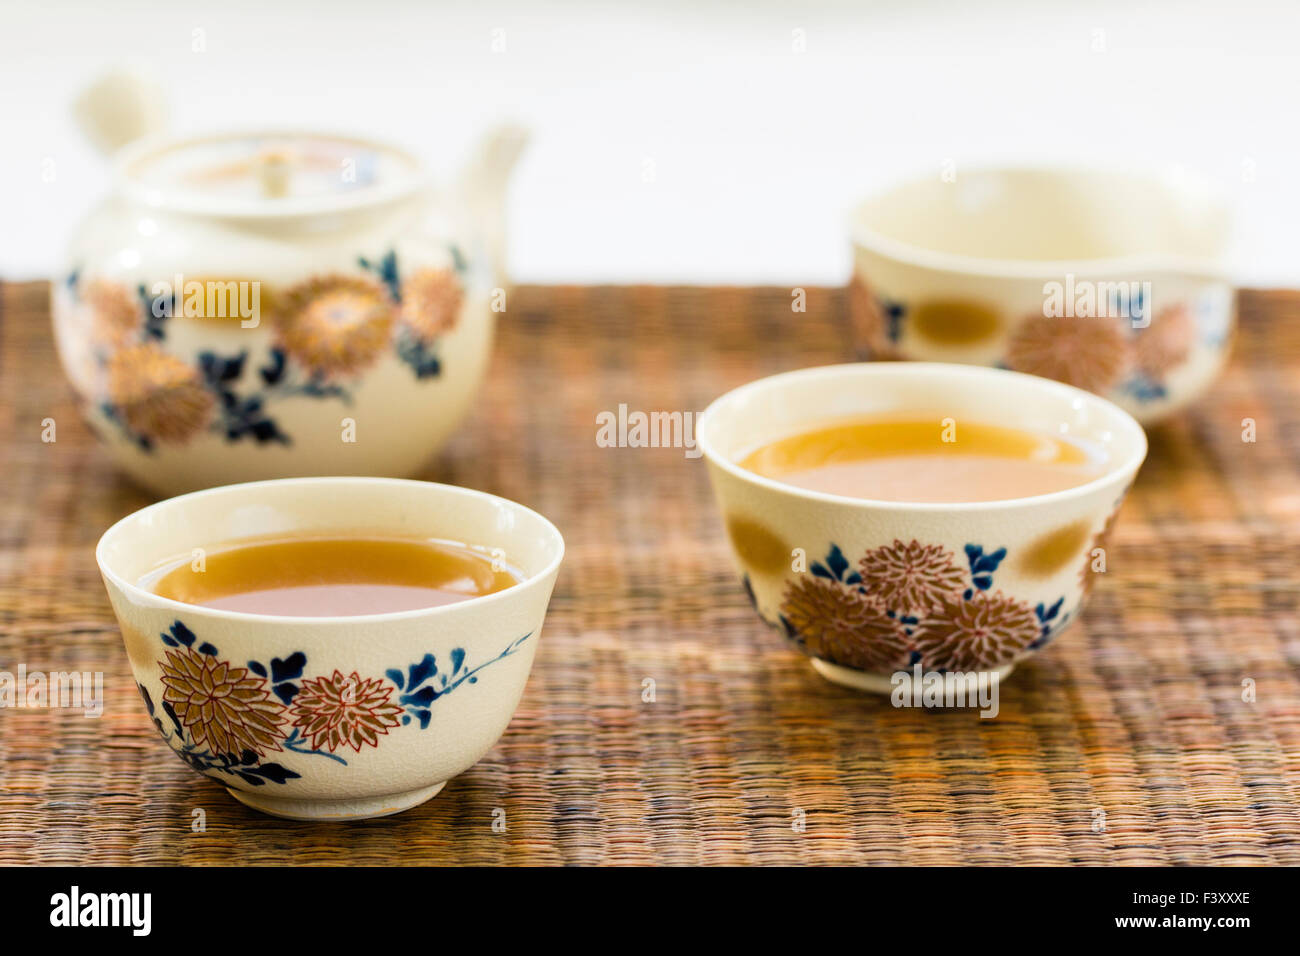 Japanischen chrysantheme eingerichtet Kaffee Service, eingestellt. Teekanne, zwei handless Tassen mit Tee gefüllt, und Schüssel mit grünem Tee auf Reed mat. Stockfoto